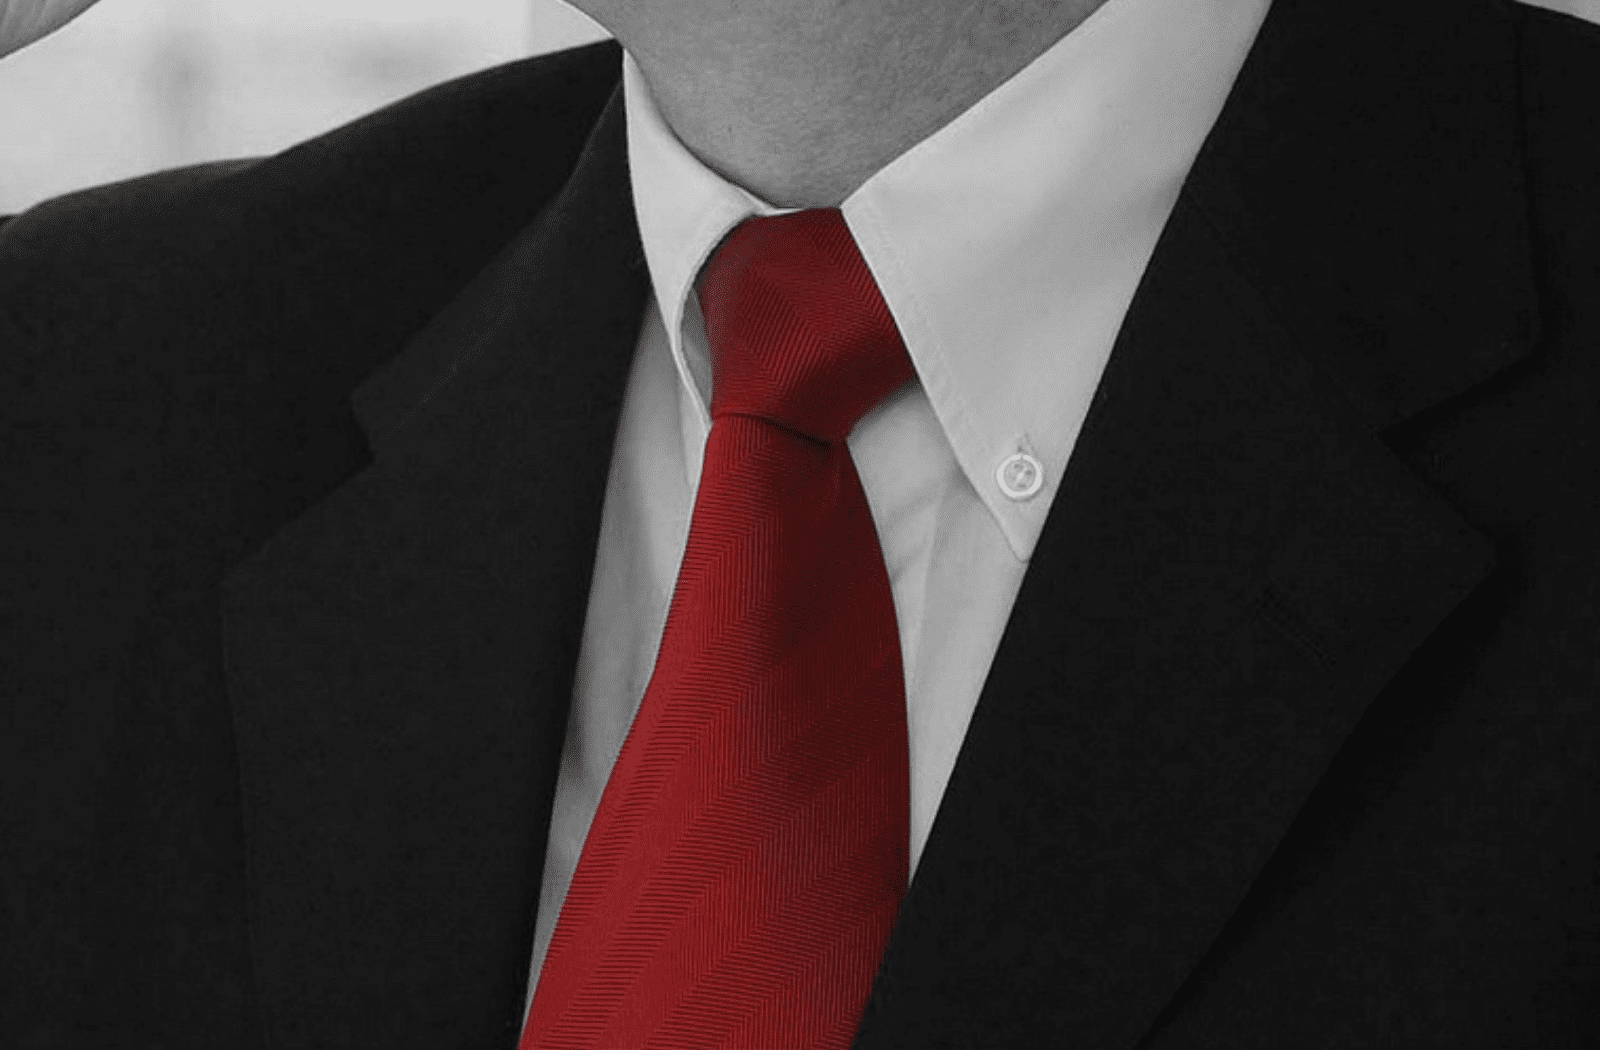 Men's Black Suit White Shirt Red Tie Combination